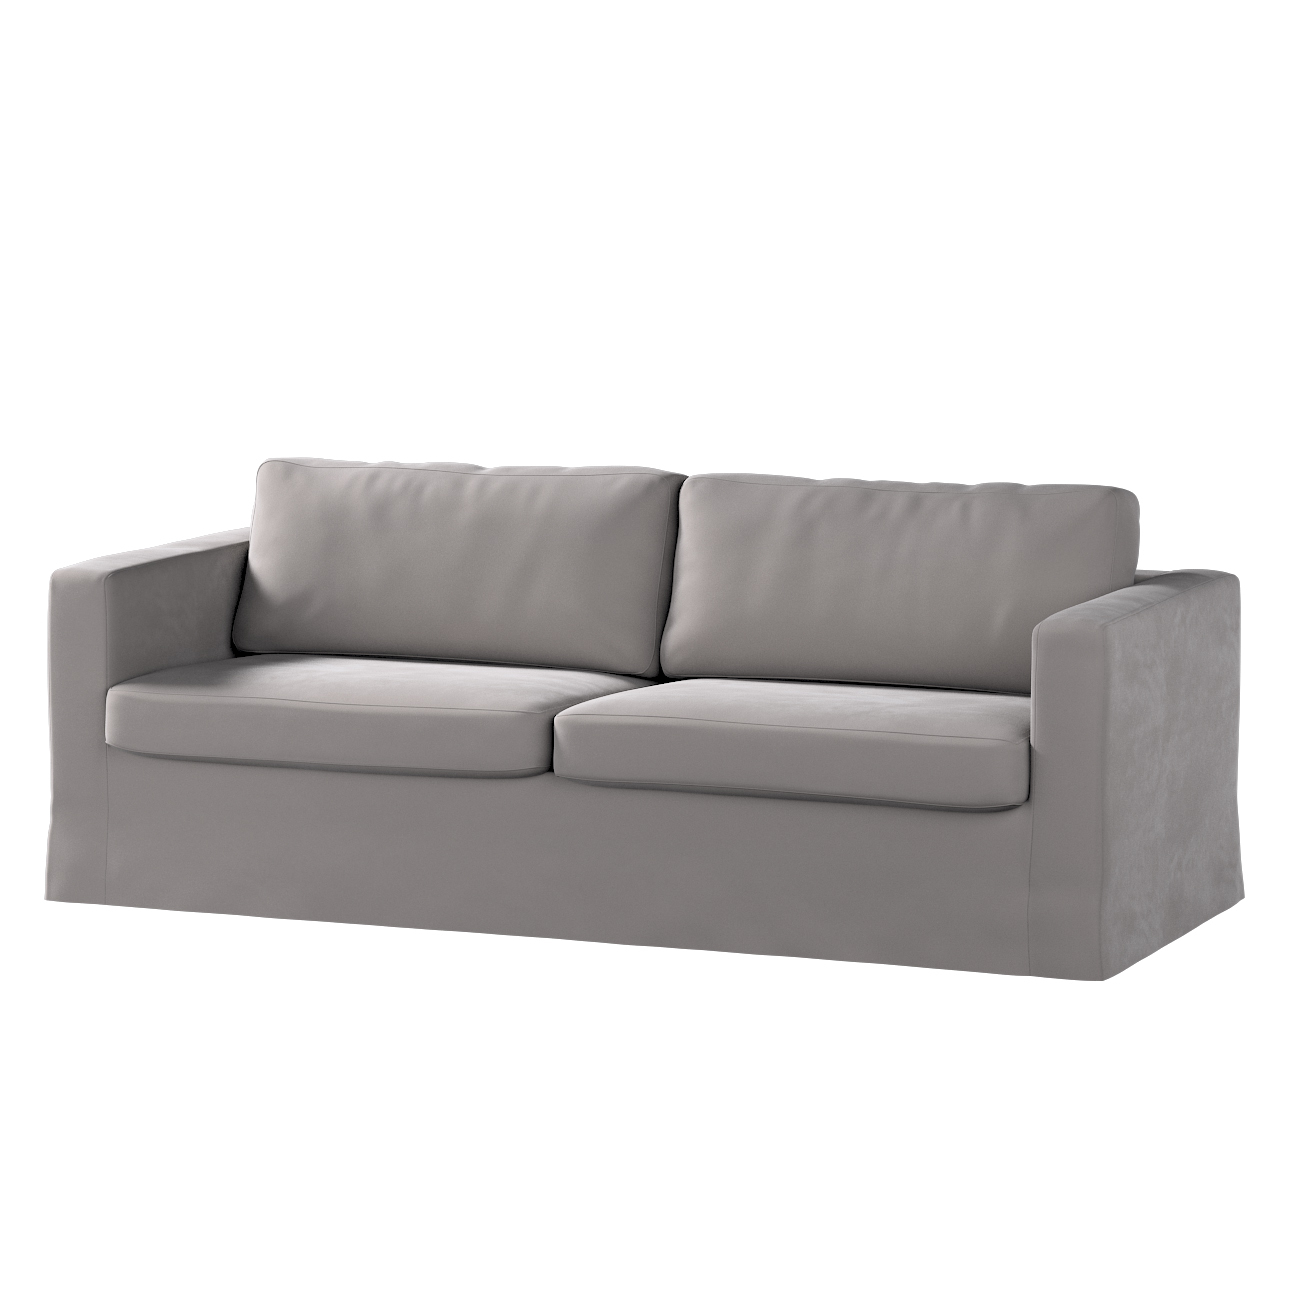 Bezug für Karlstad 3-Sitzer Sofa nicht ausklappbar, lang, taupengrau, Bezug günstig online kaufen